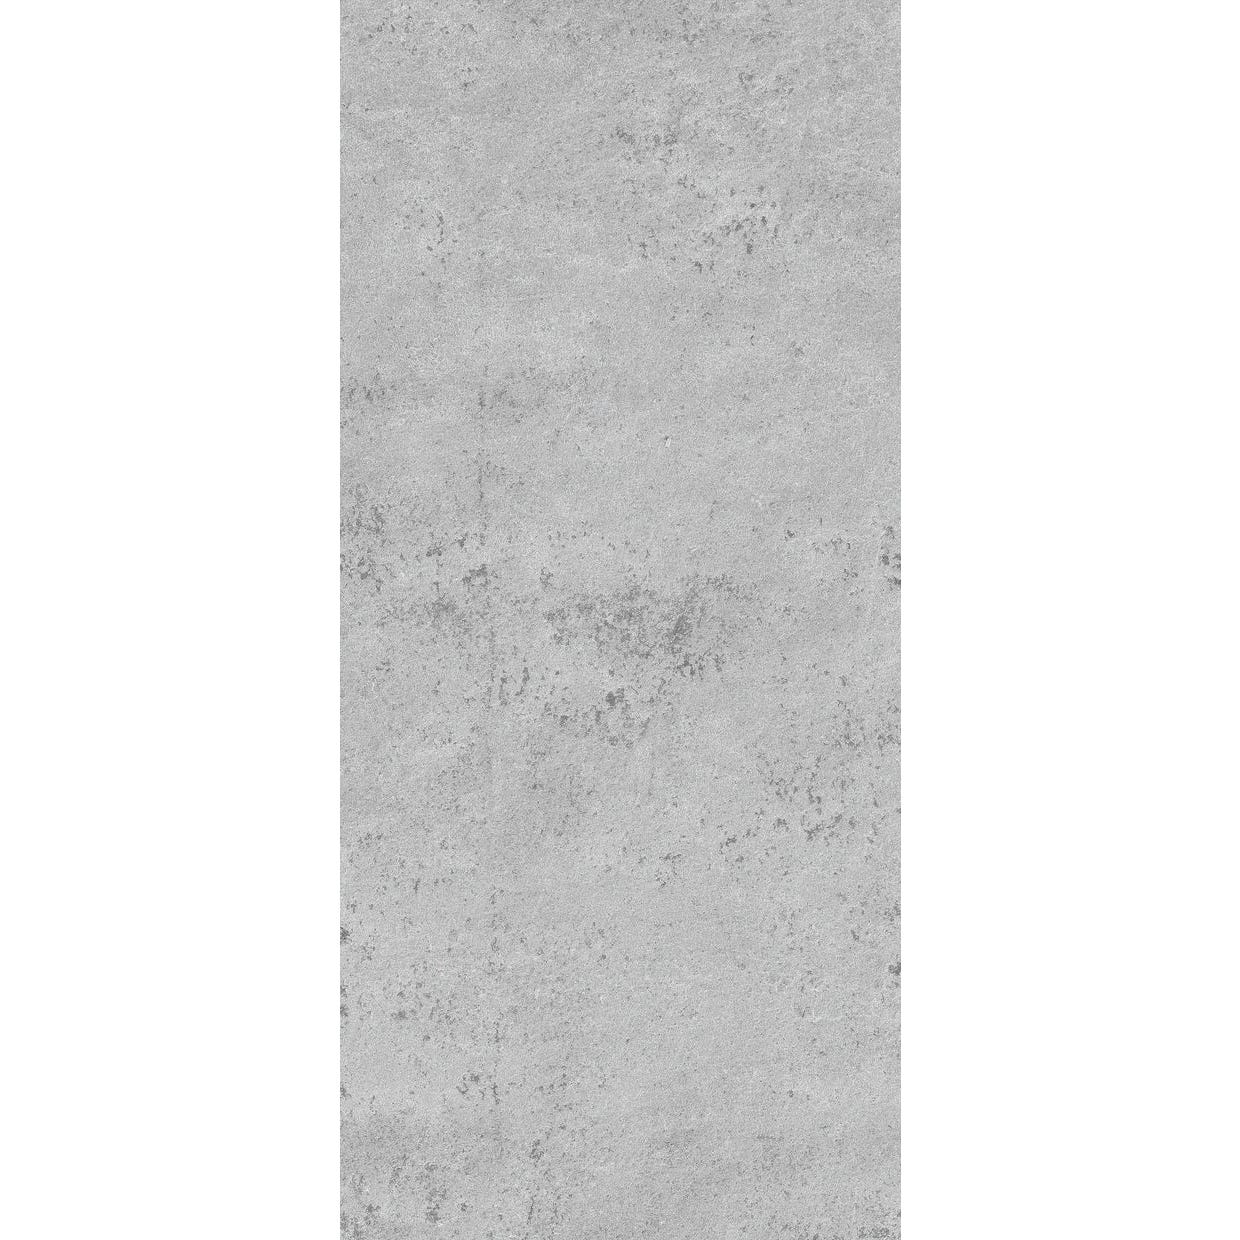 Schulte Panneau mural Pierre gris clair, revêtement pour douche et salle de bains, DécoDesign DÉCOR, 100 x 210 cm 1